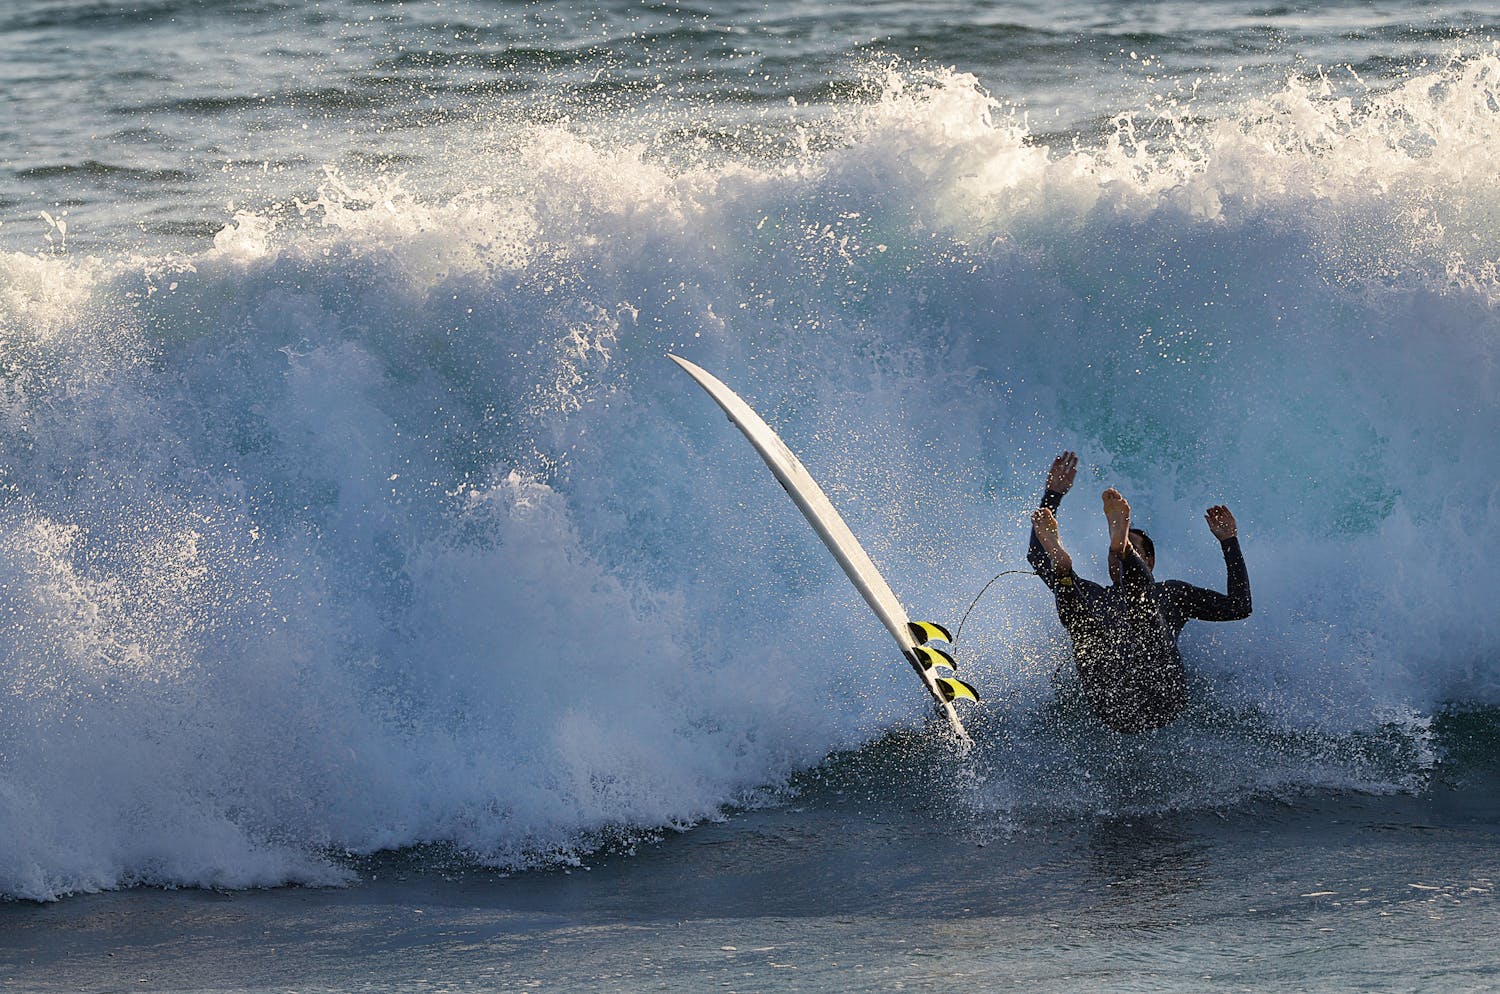 Les dangers du surf et comment les éviter selon un médecin expert.jpeg